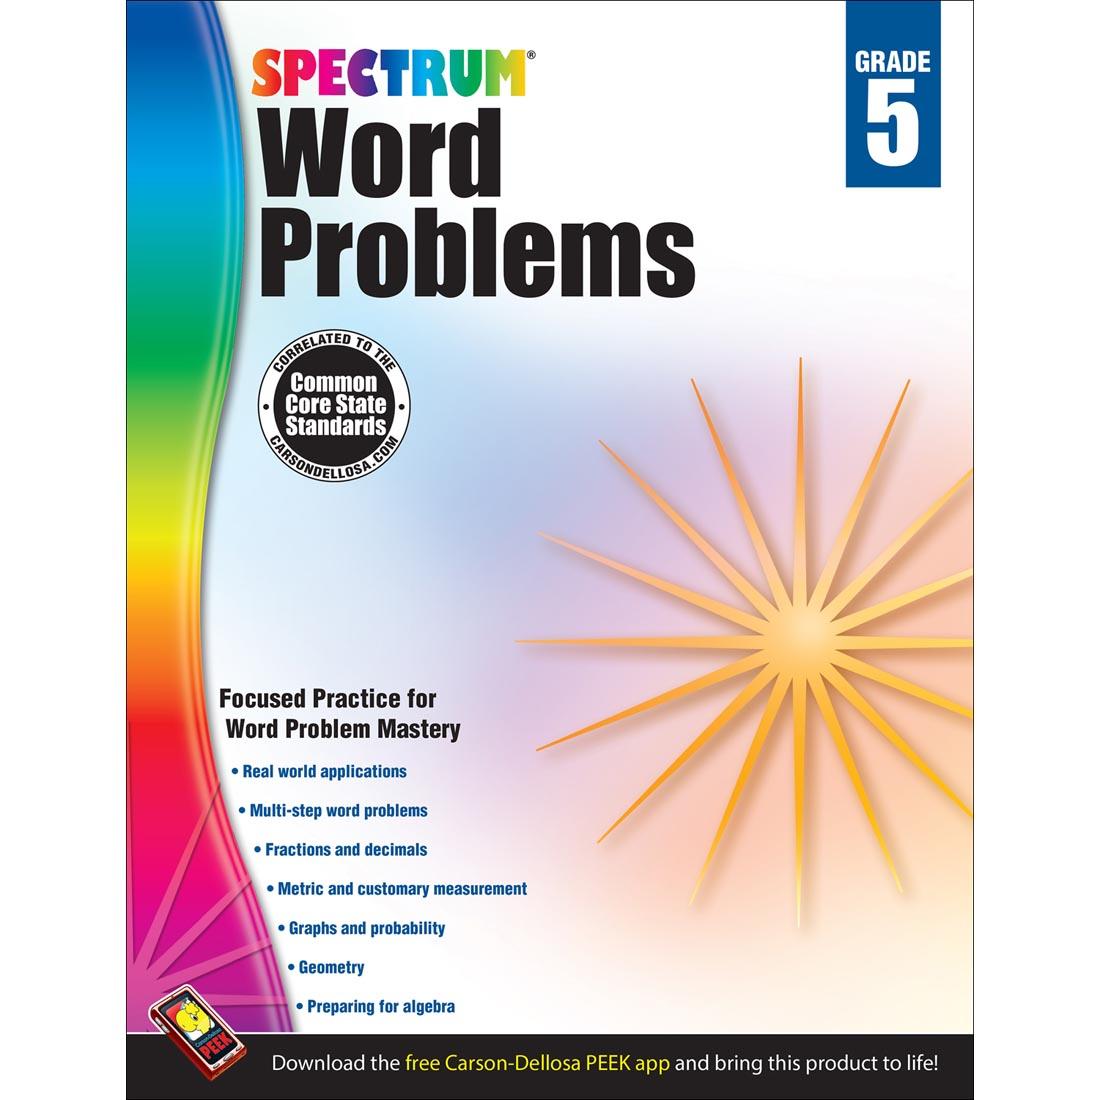 Spectrum Word Problems by Carson Dellosa Grade 5